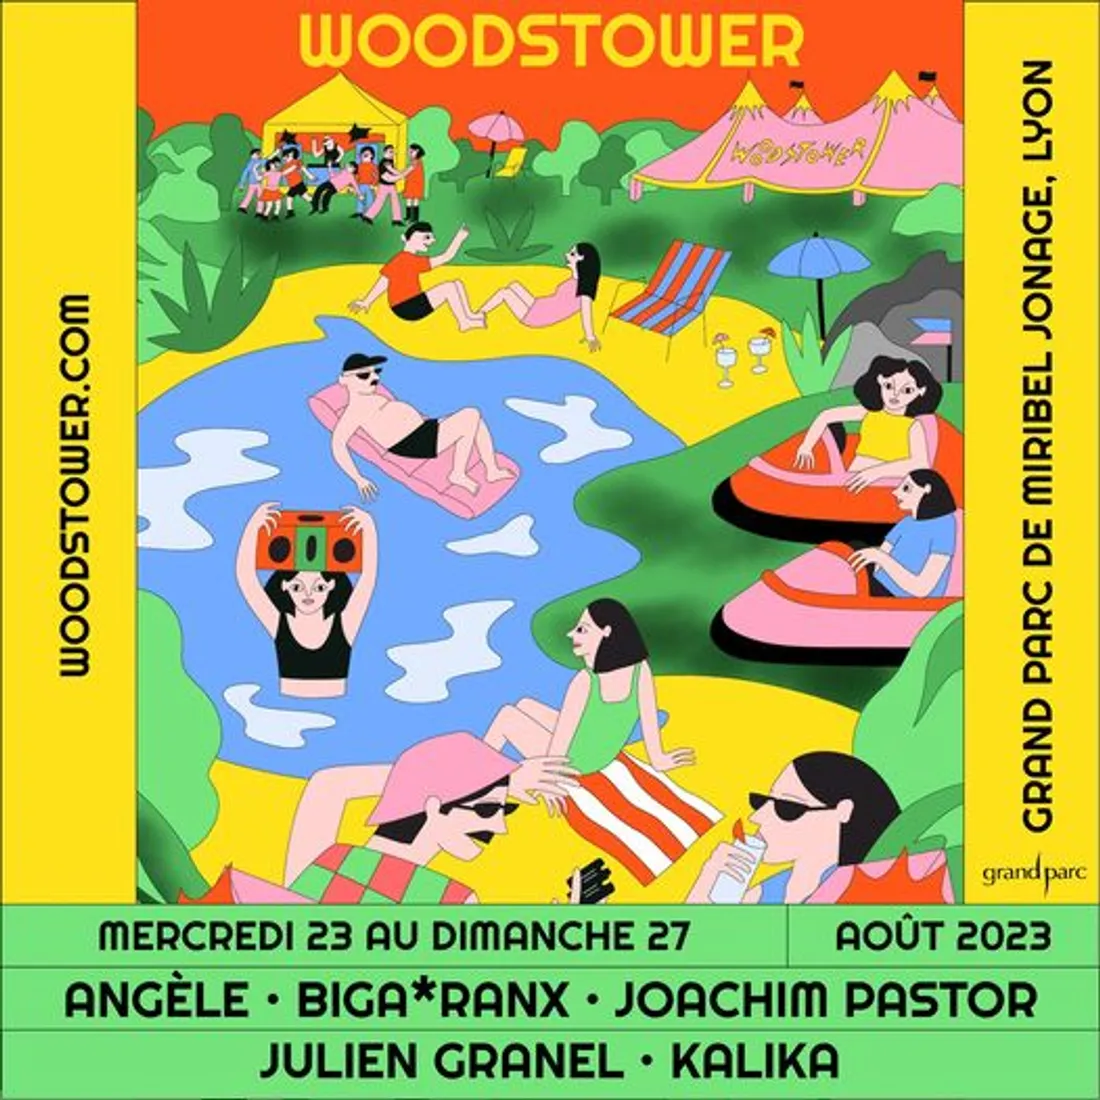 Woodstower